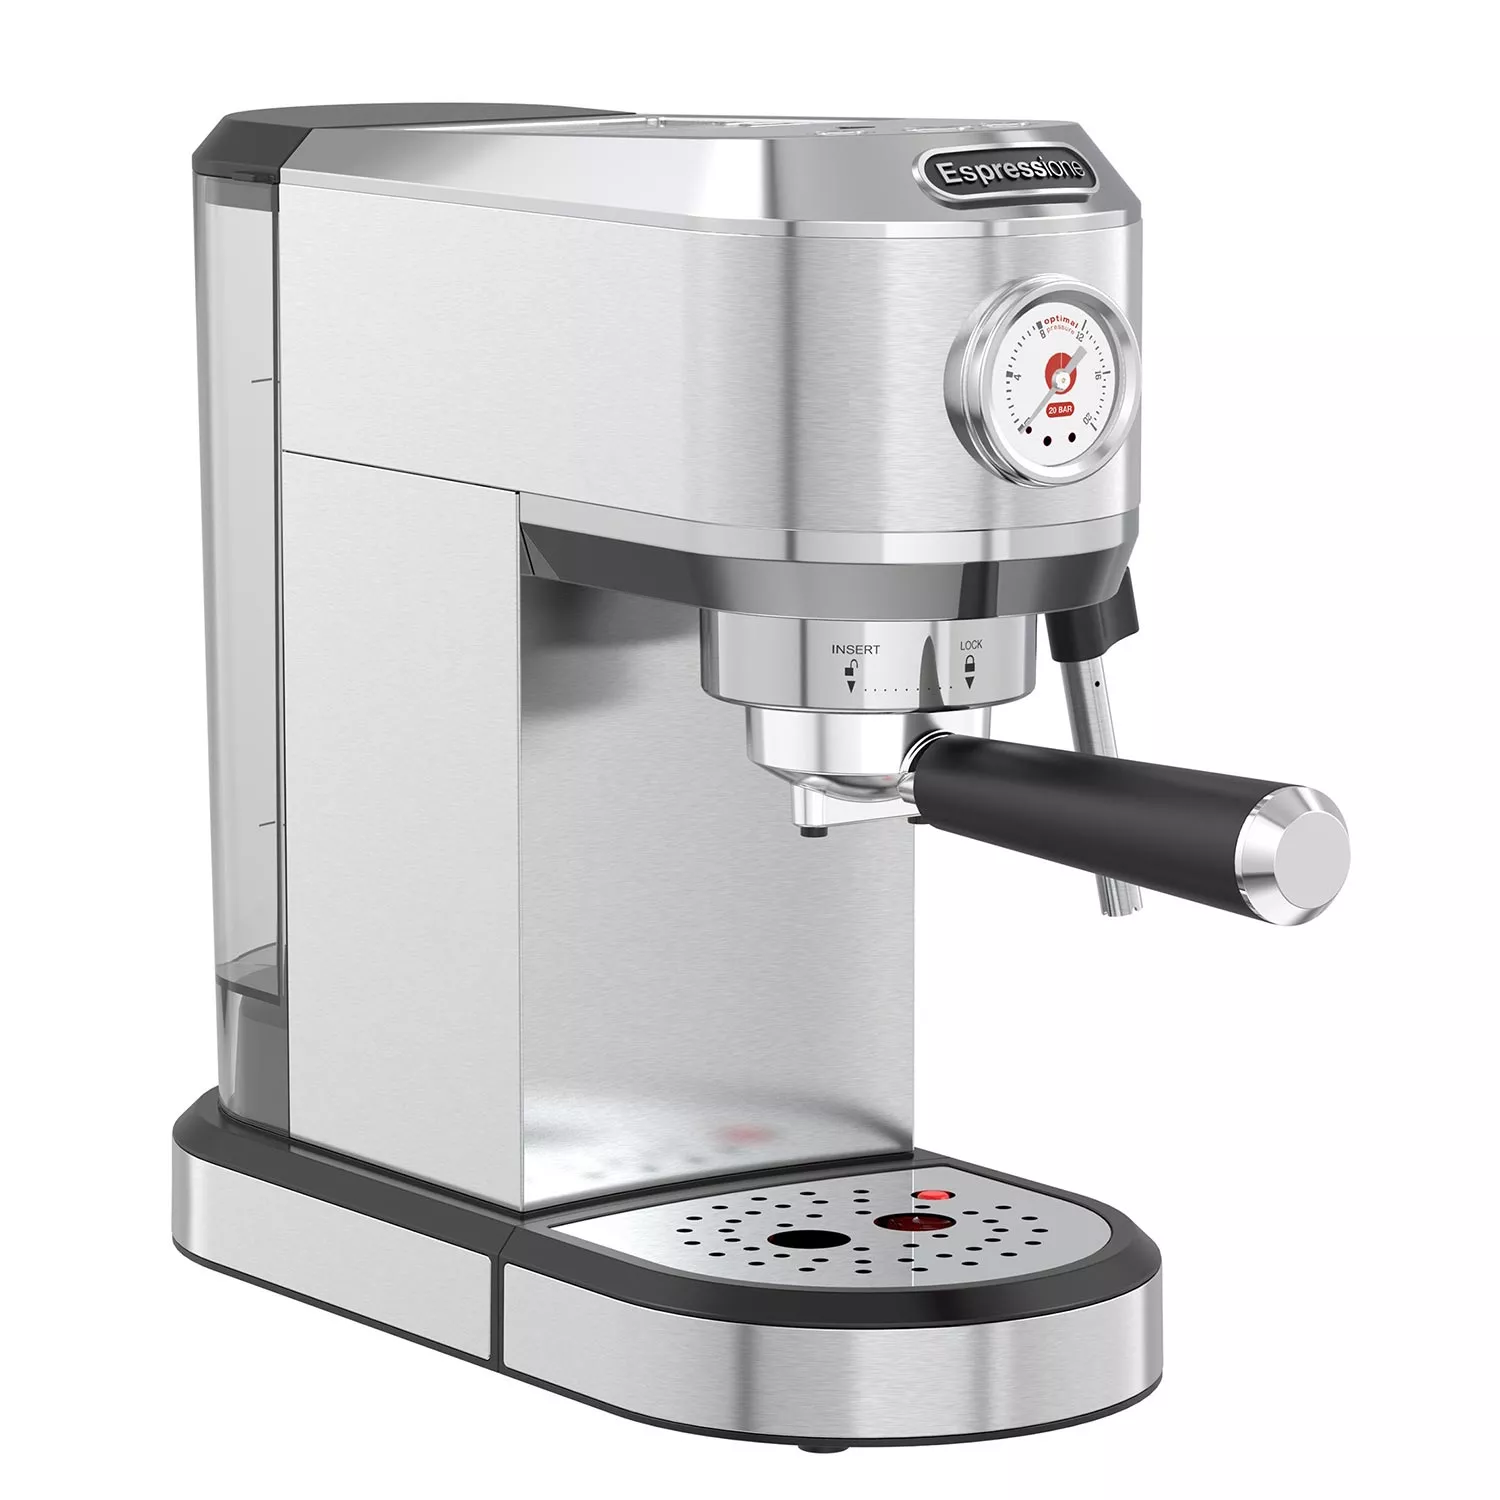 Espressione Flex 3-in-1 Espresso Coffee Machine 